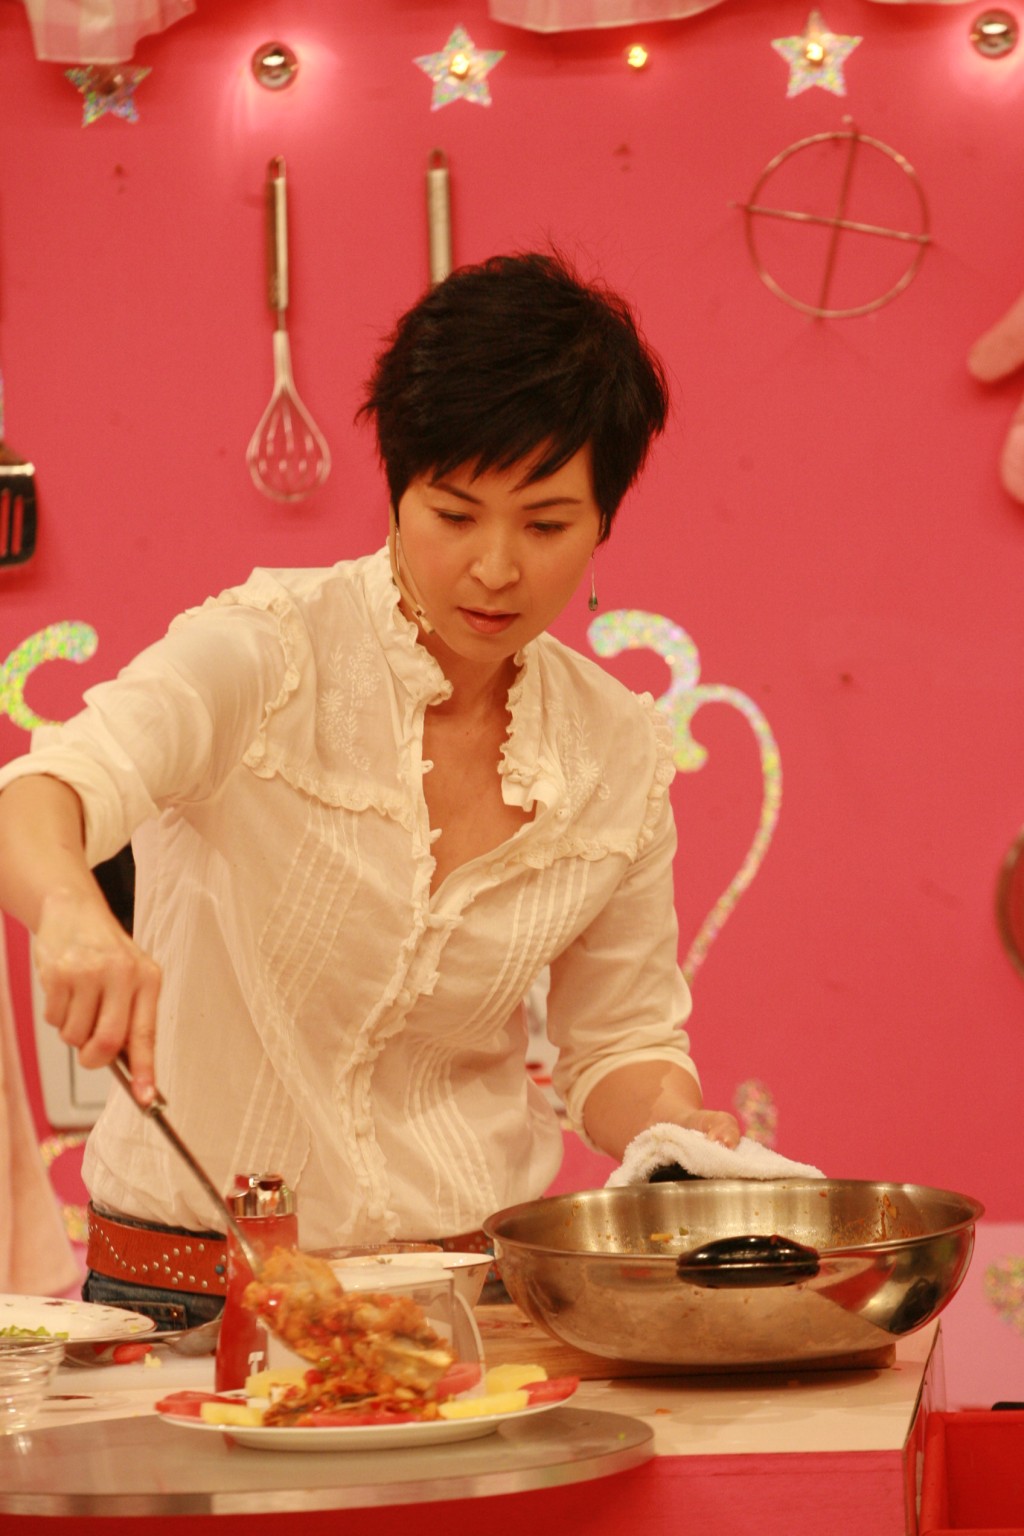  蘇玉華曾於綜藝節目《美女廚房》大展廚藝，因而被冠以「美女廚神」之稱。